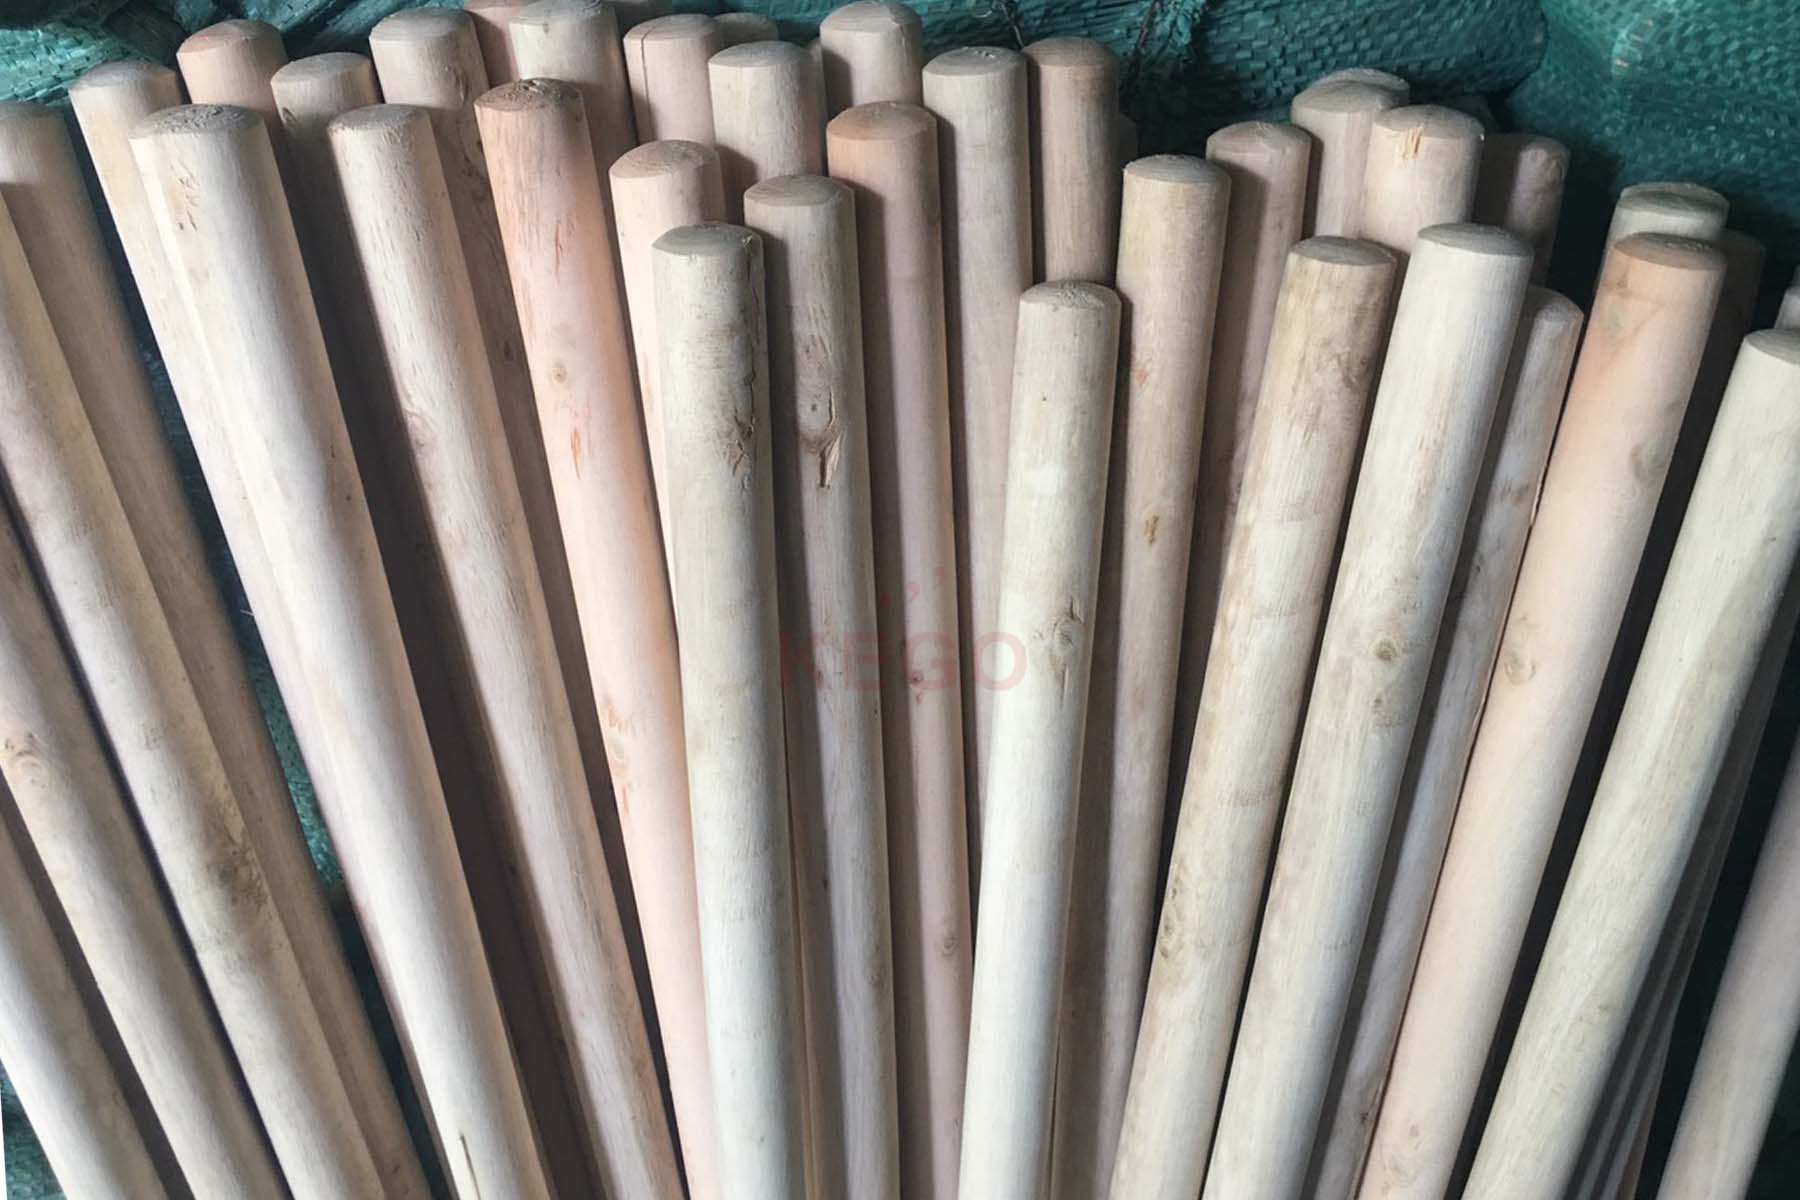 https://kego.com.vn/wp-content/uploads/2015/09/wooden-broom-handle-kego-17.jpg